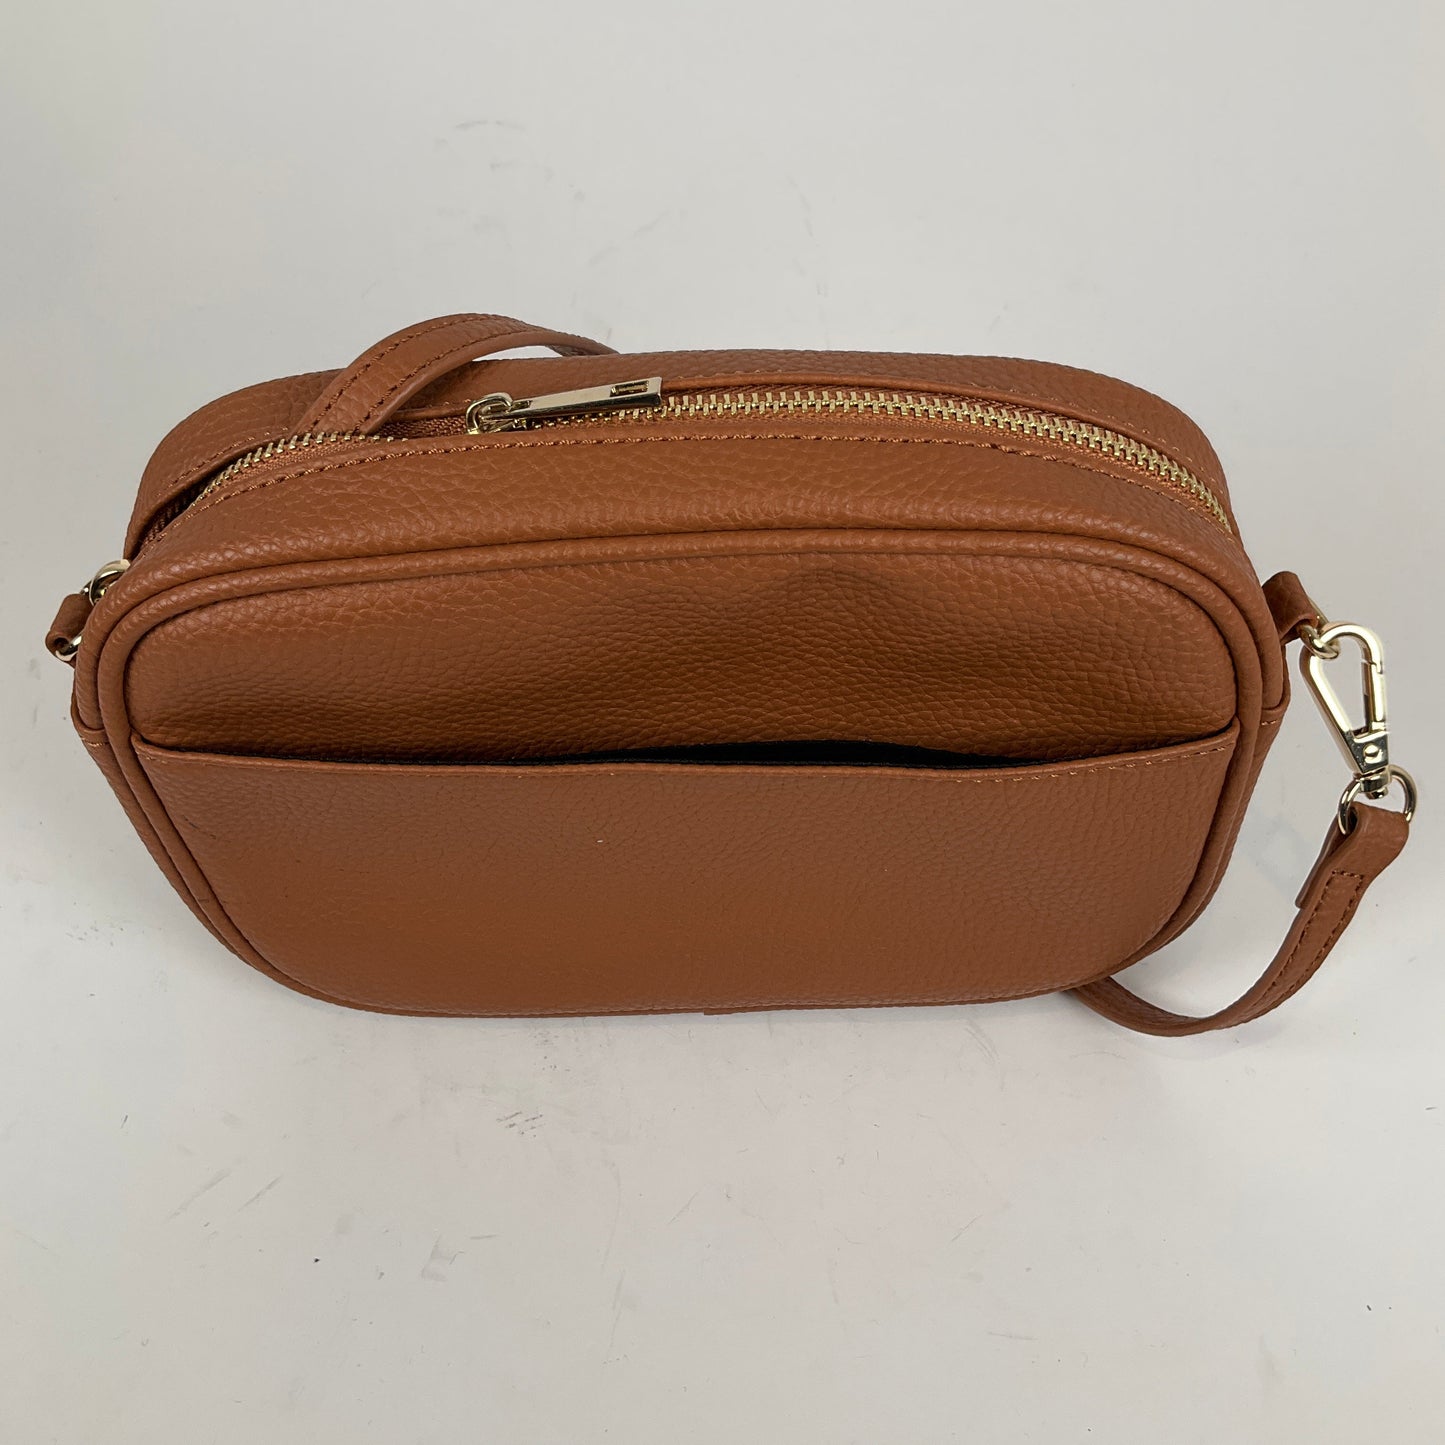 Ladies Shoulder Purse Handbags Wallets & Cases